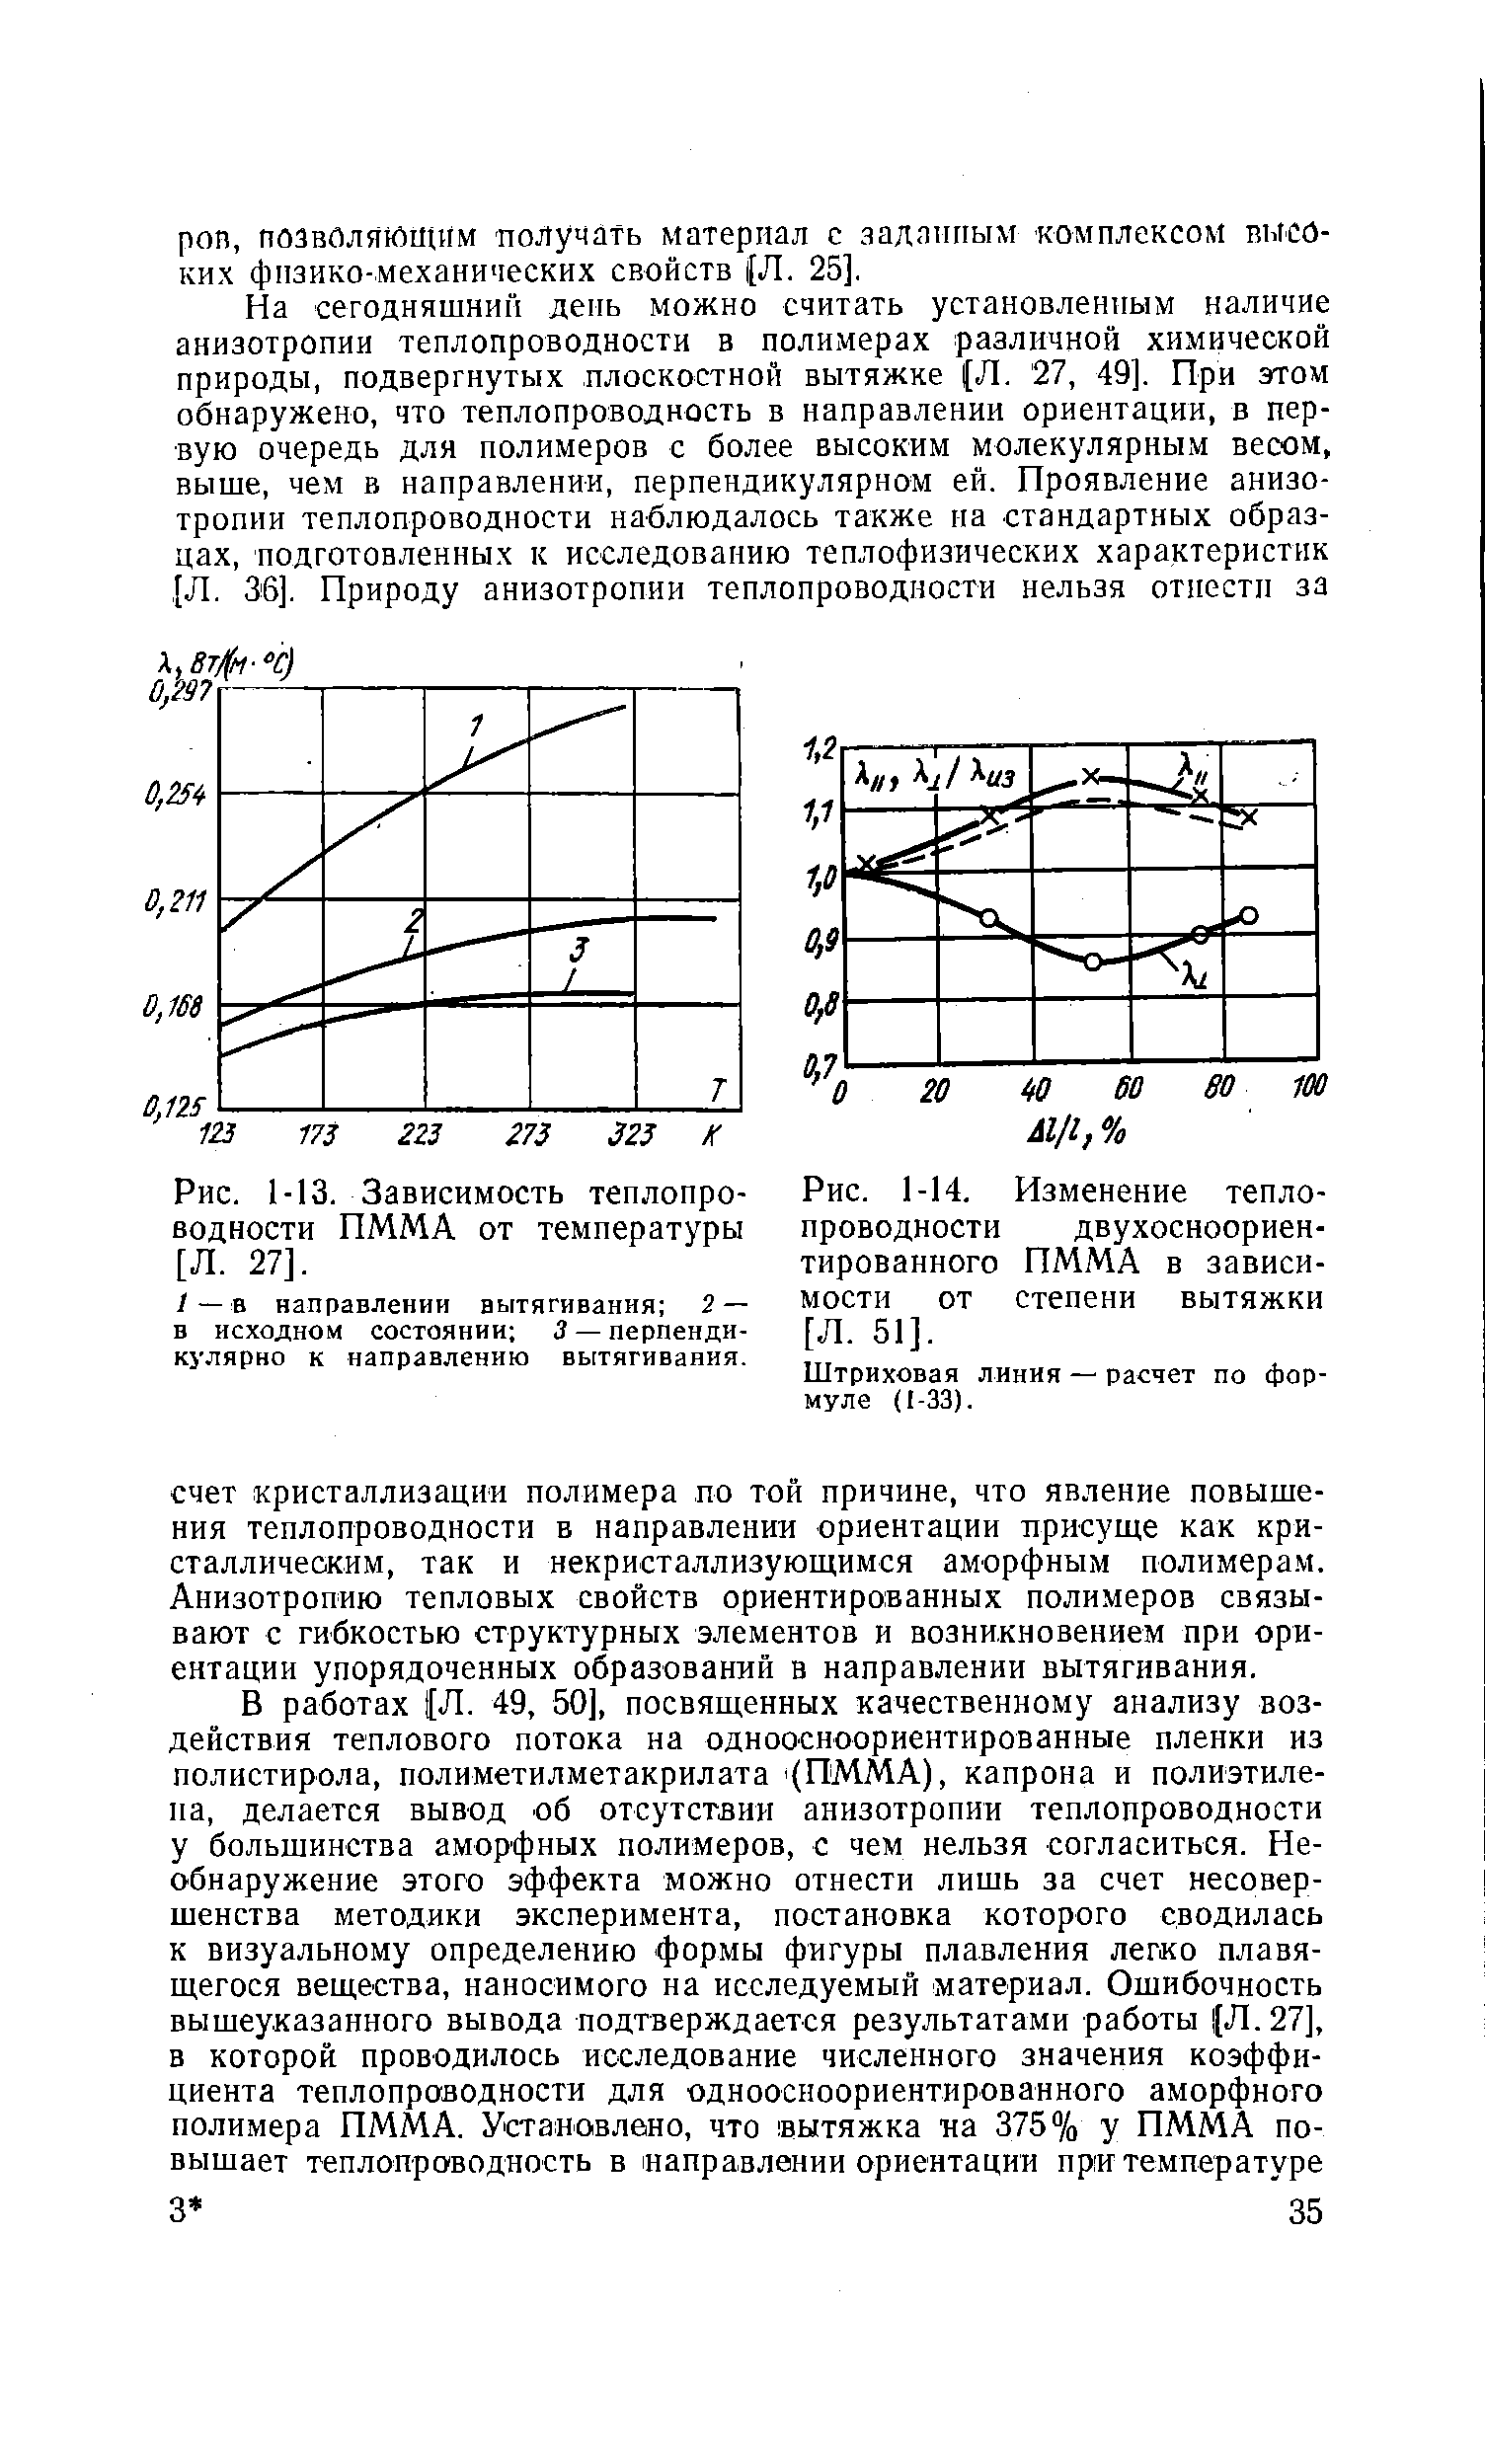 Рис. 1-14. Изменение теплопроводности двухосноориентированного ПММА в зависимости от степени вытяжки [Л. 51].
